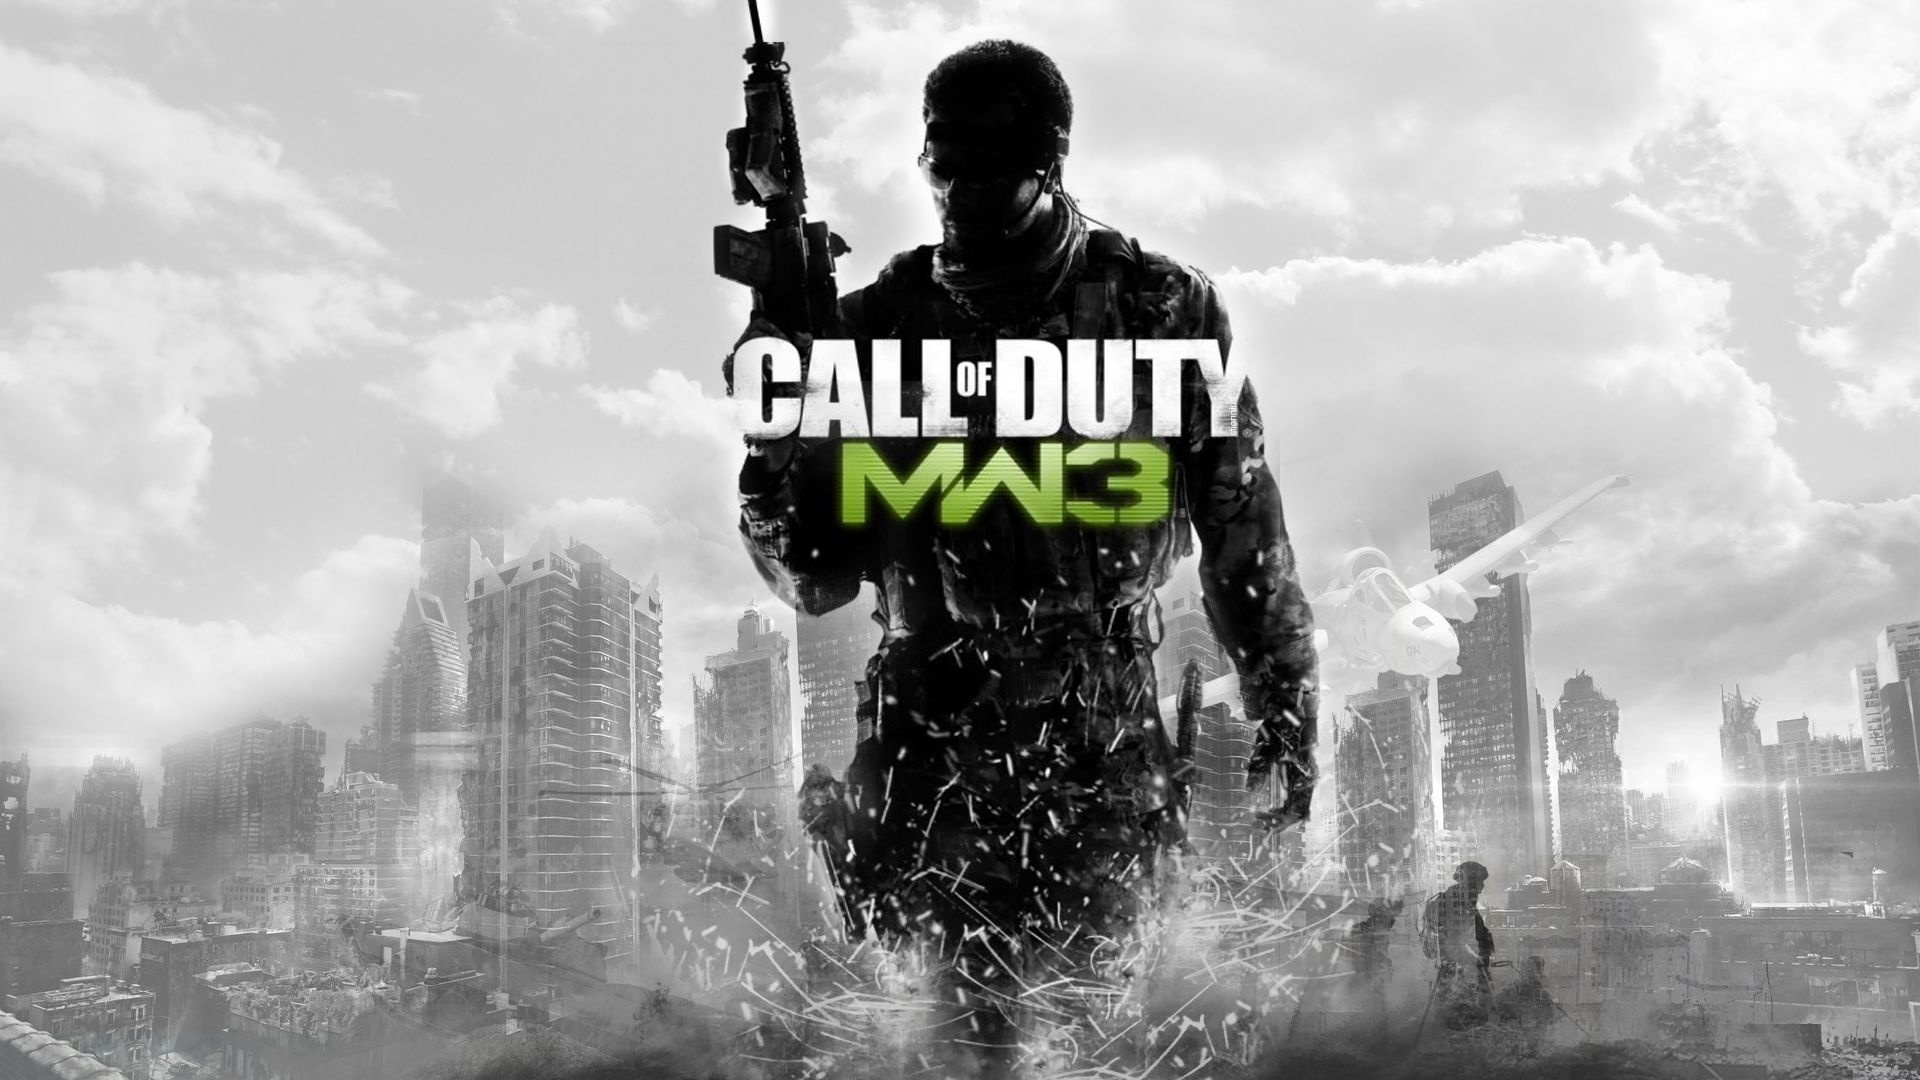 Скачать обои Call Of Duty Modern Warfare 3 на телефон бесплатно